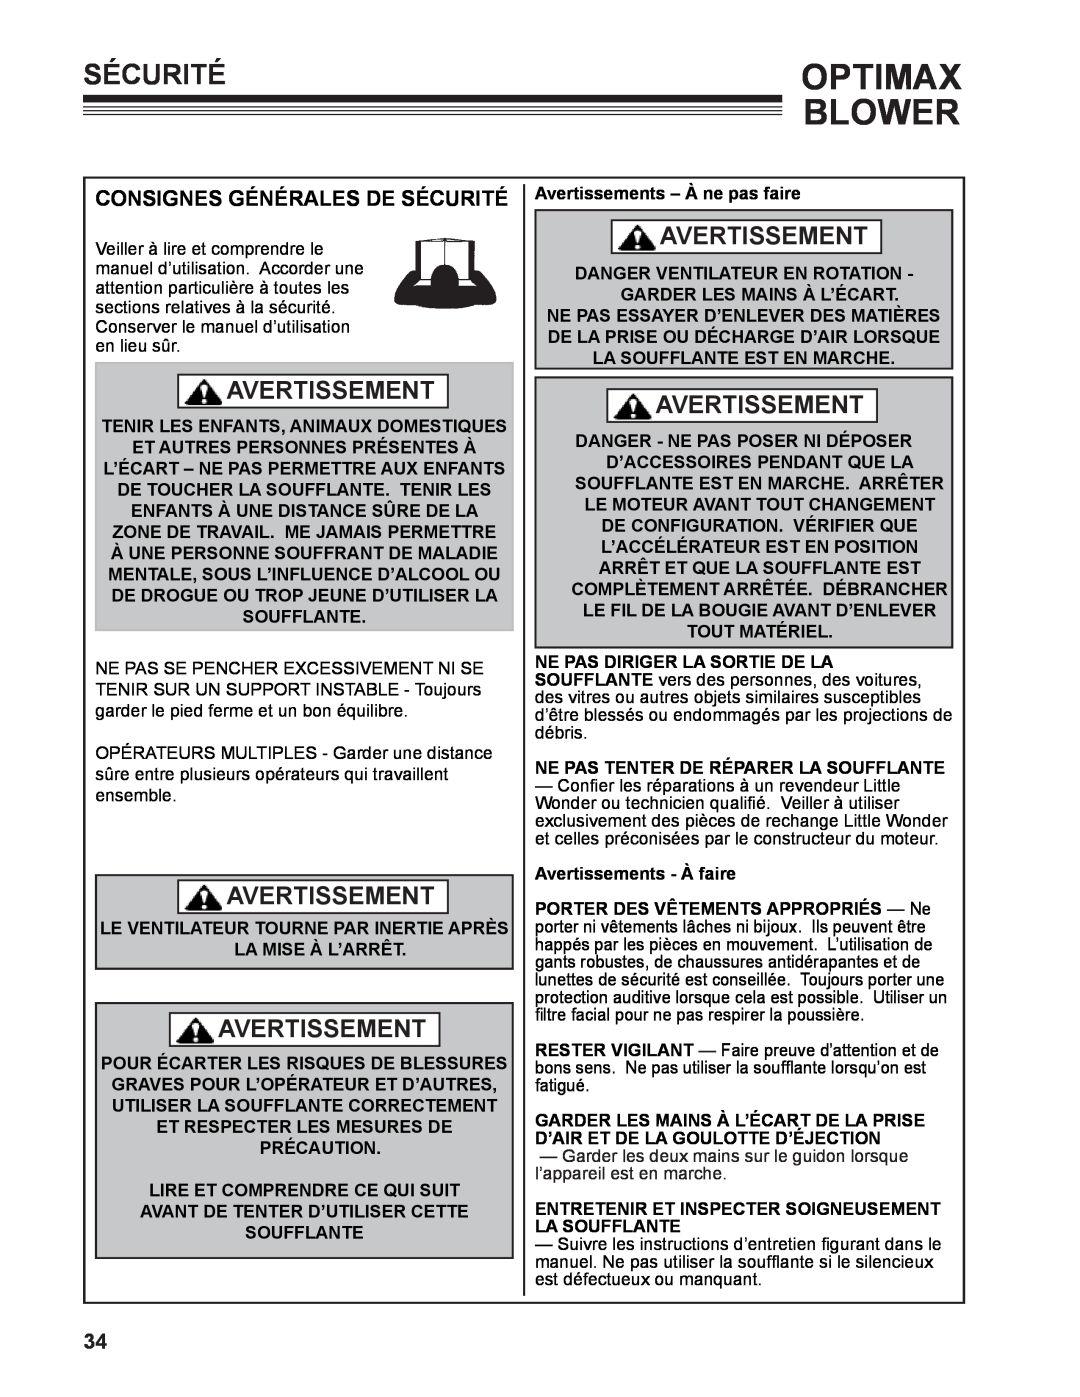 Little Wonder LB901-00-01 technical manual Consignes générales de sécurité, Optimax, Blower, Sécurité, Avertissement 